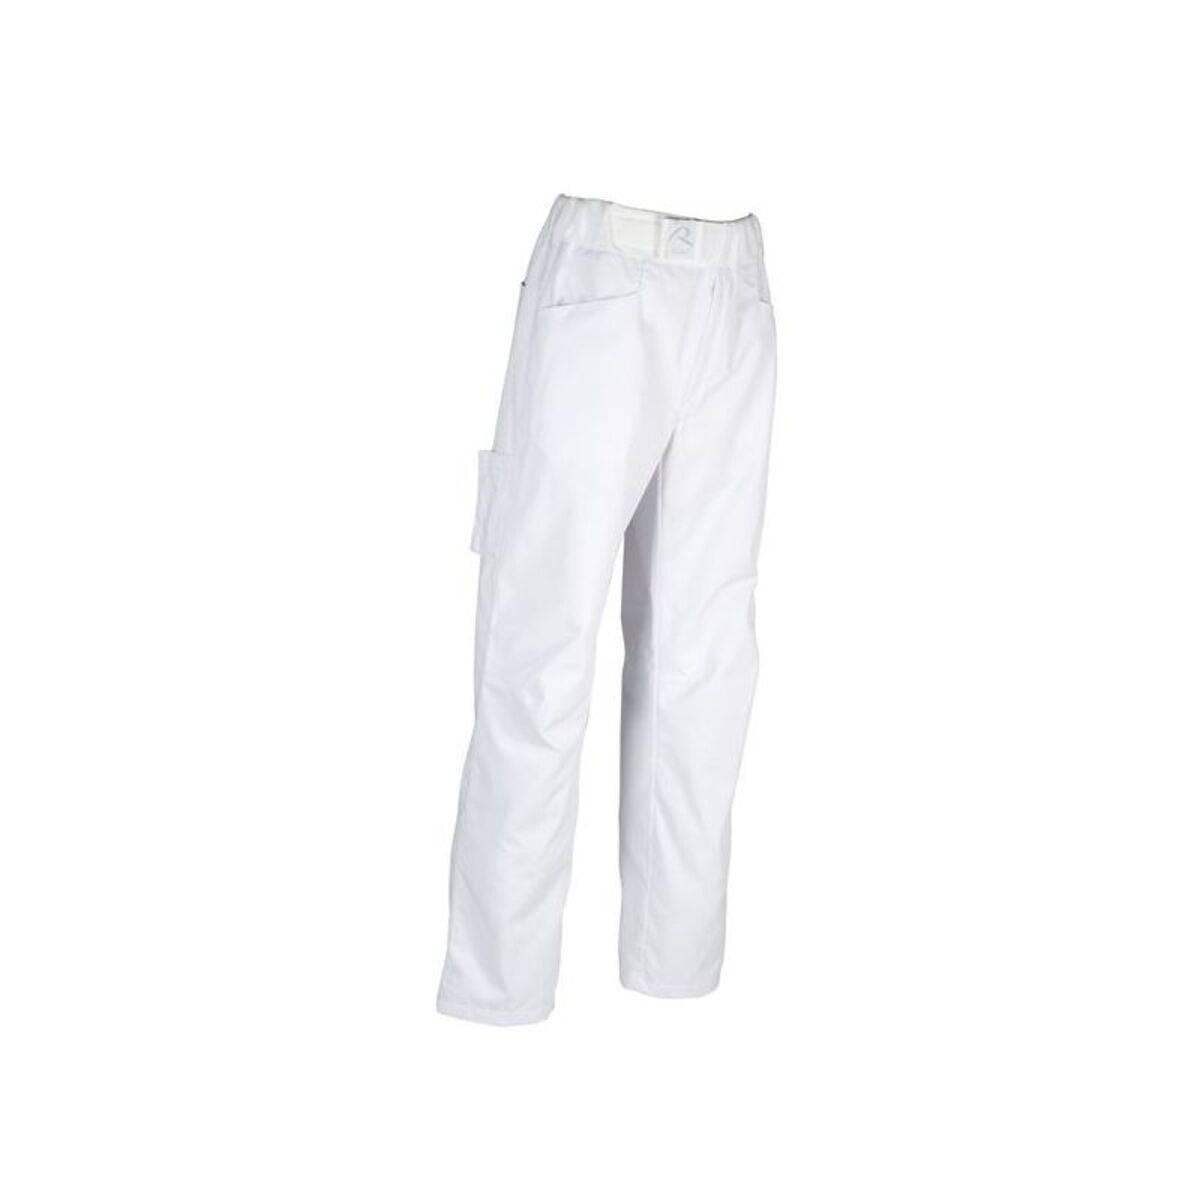 Pantalon De Cusine Homme Arenal Blanc Robur